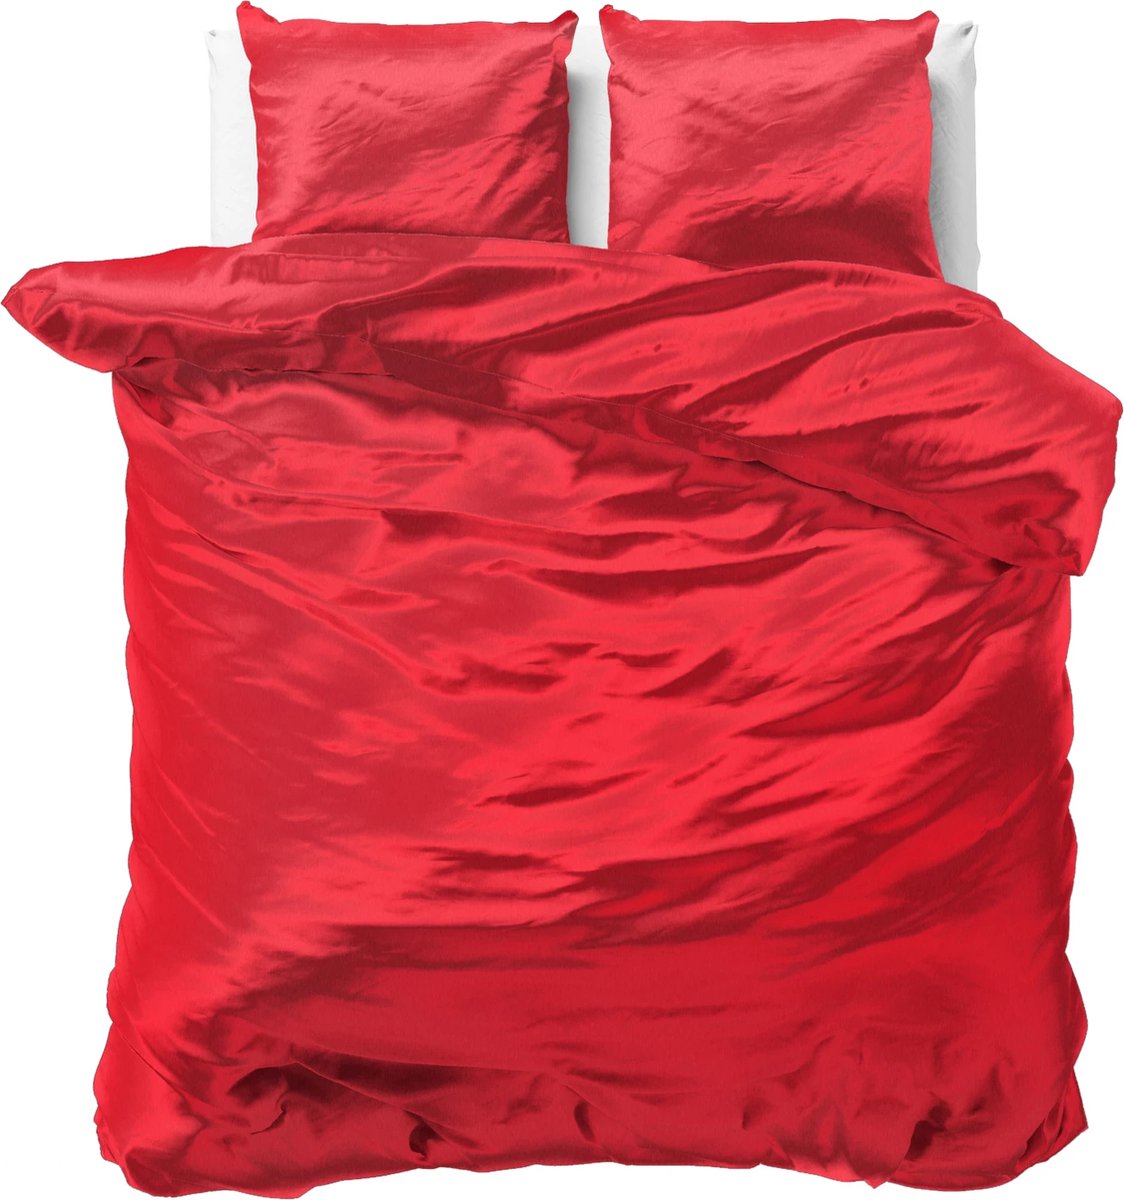 Luxe glans satijn dekbedovertrek uni rood - lits-jumeaux (240x200/220) - tegen acne, onzuiverheden en warrig haar - heerlijk zacht en soepel